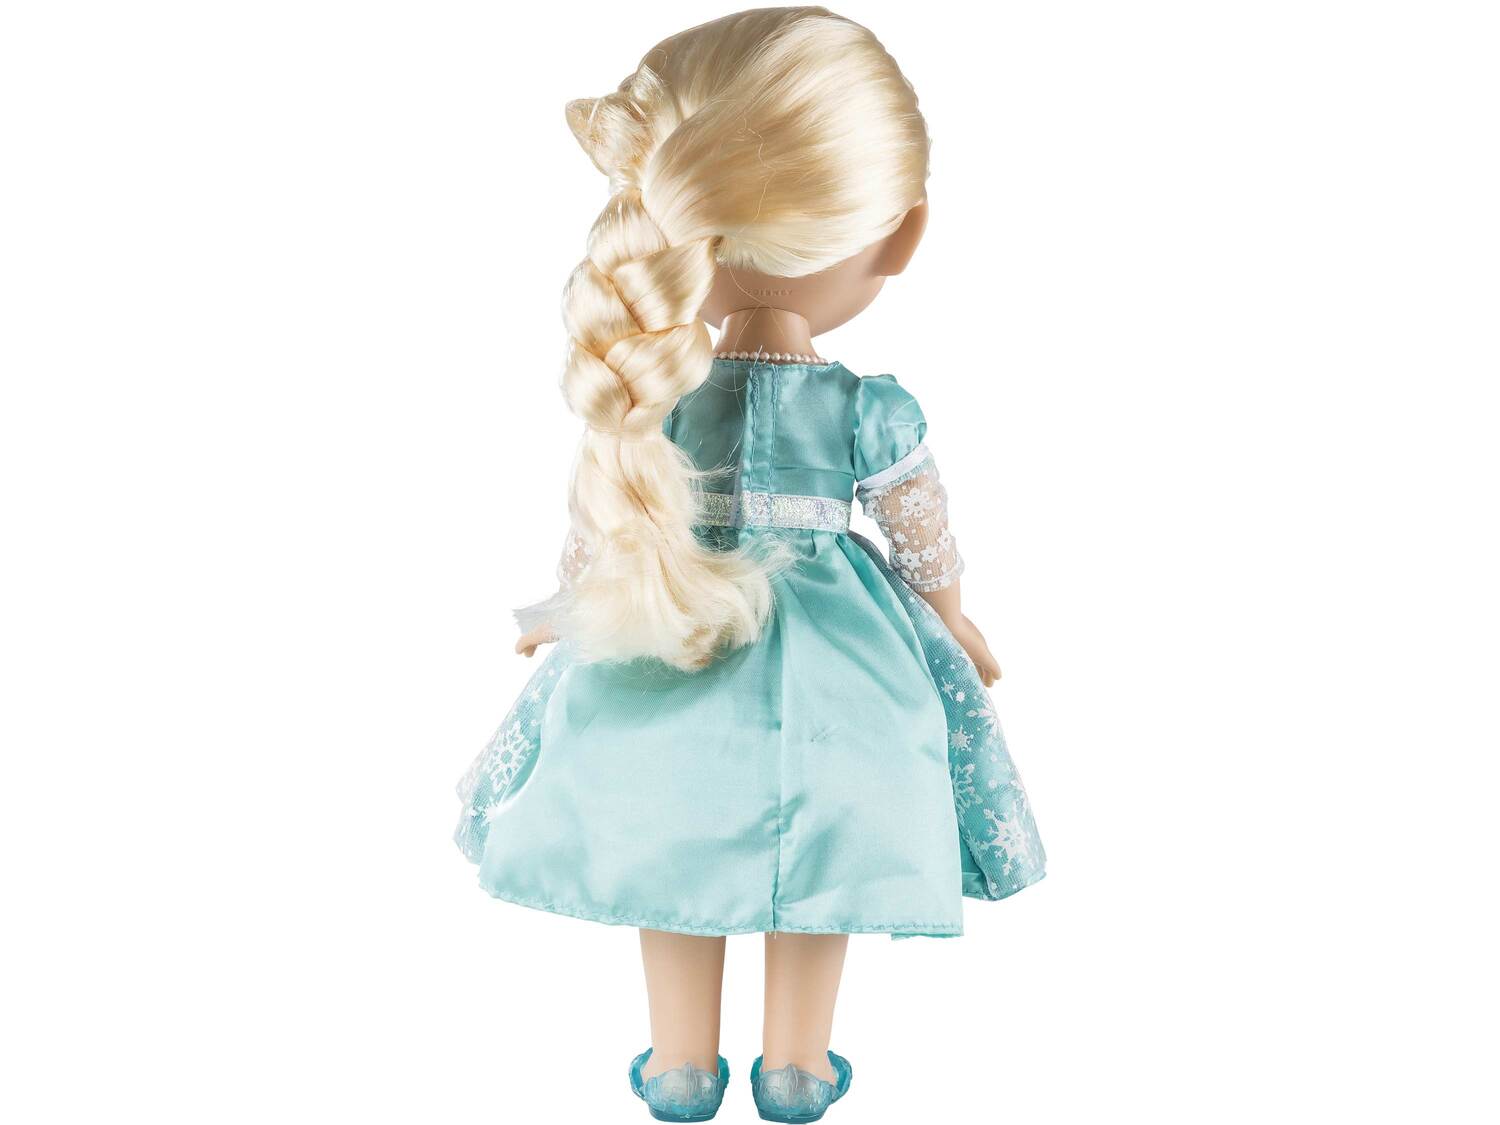 Lalka Elsa , cena 49,99 PLN  
-  wys. 33 cm
Opis

- jakks